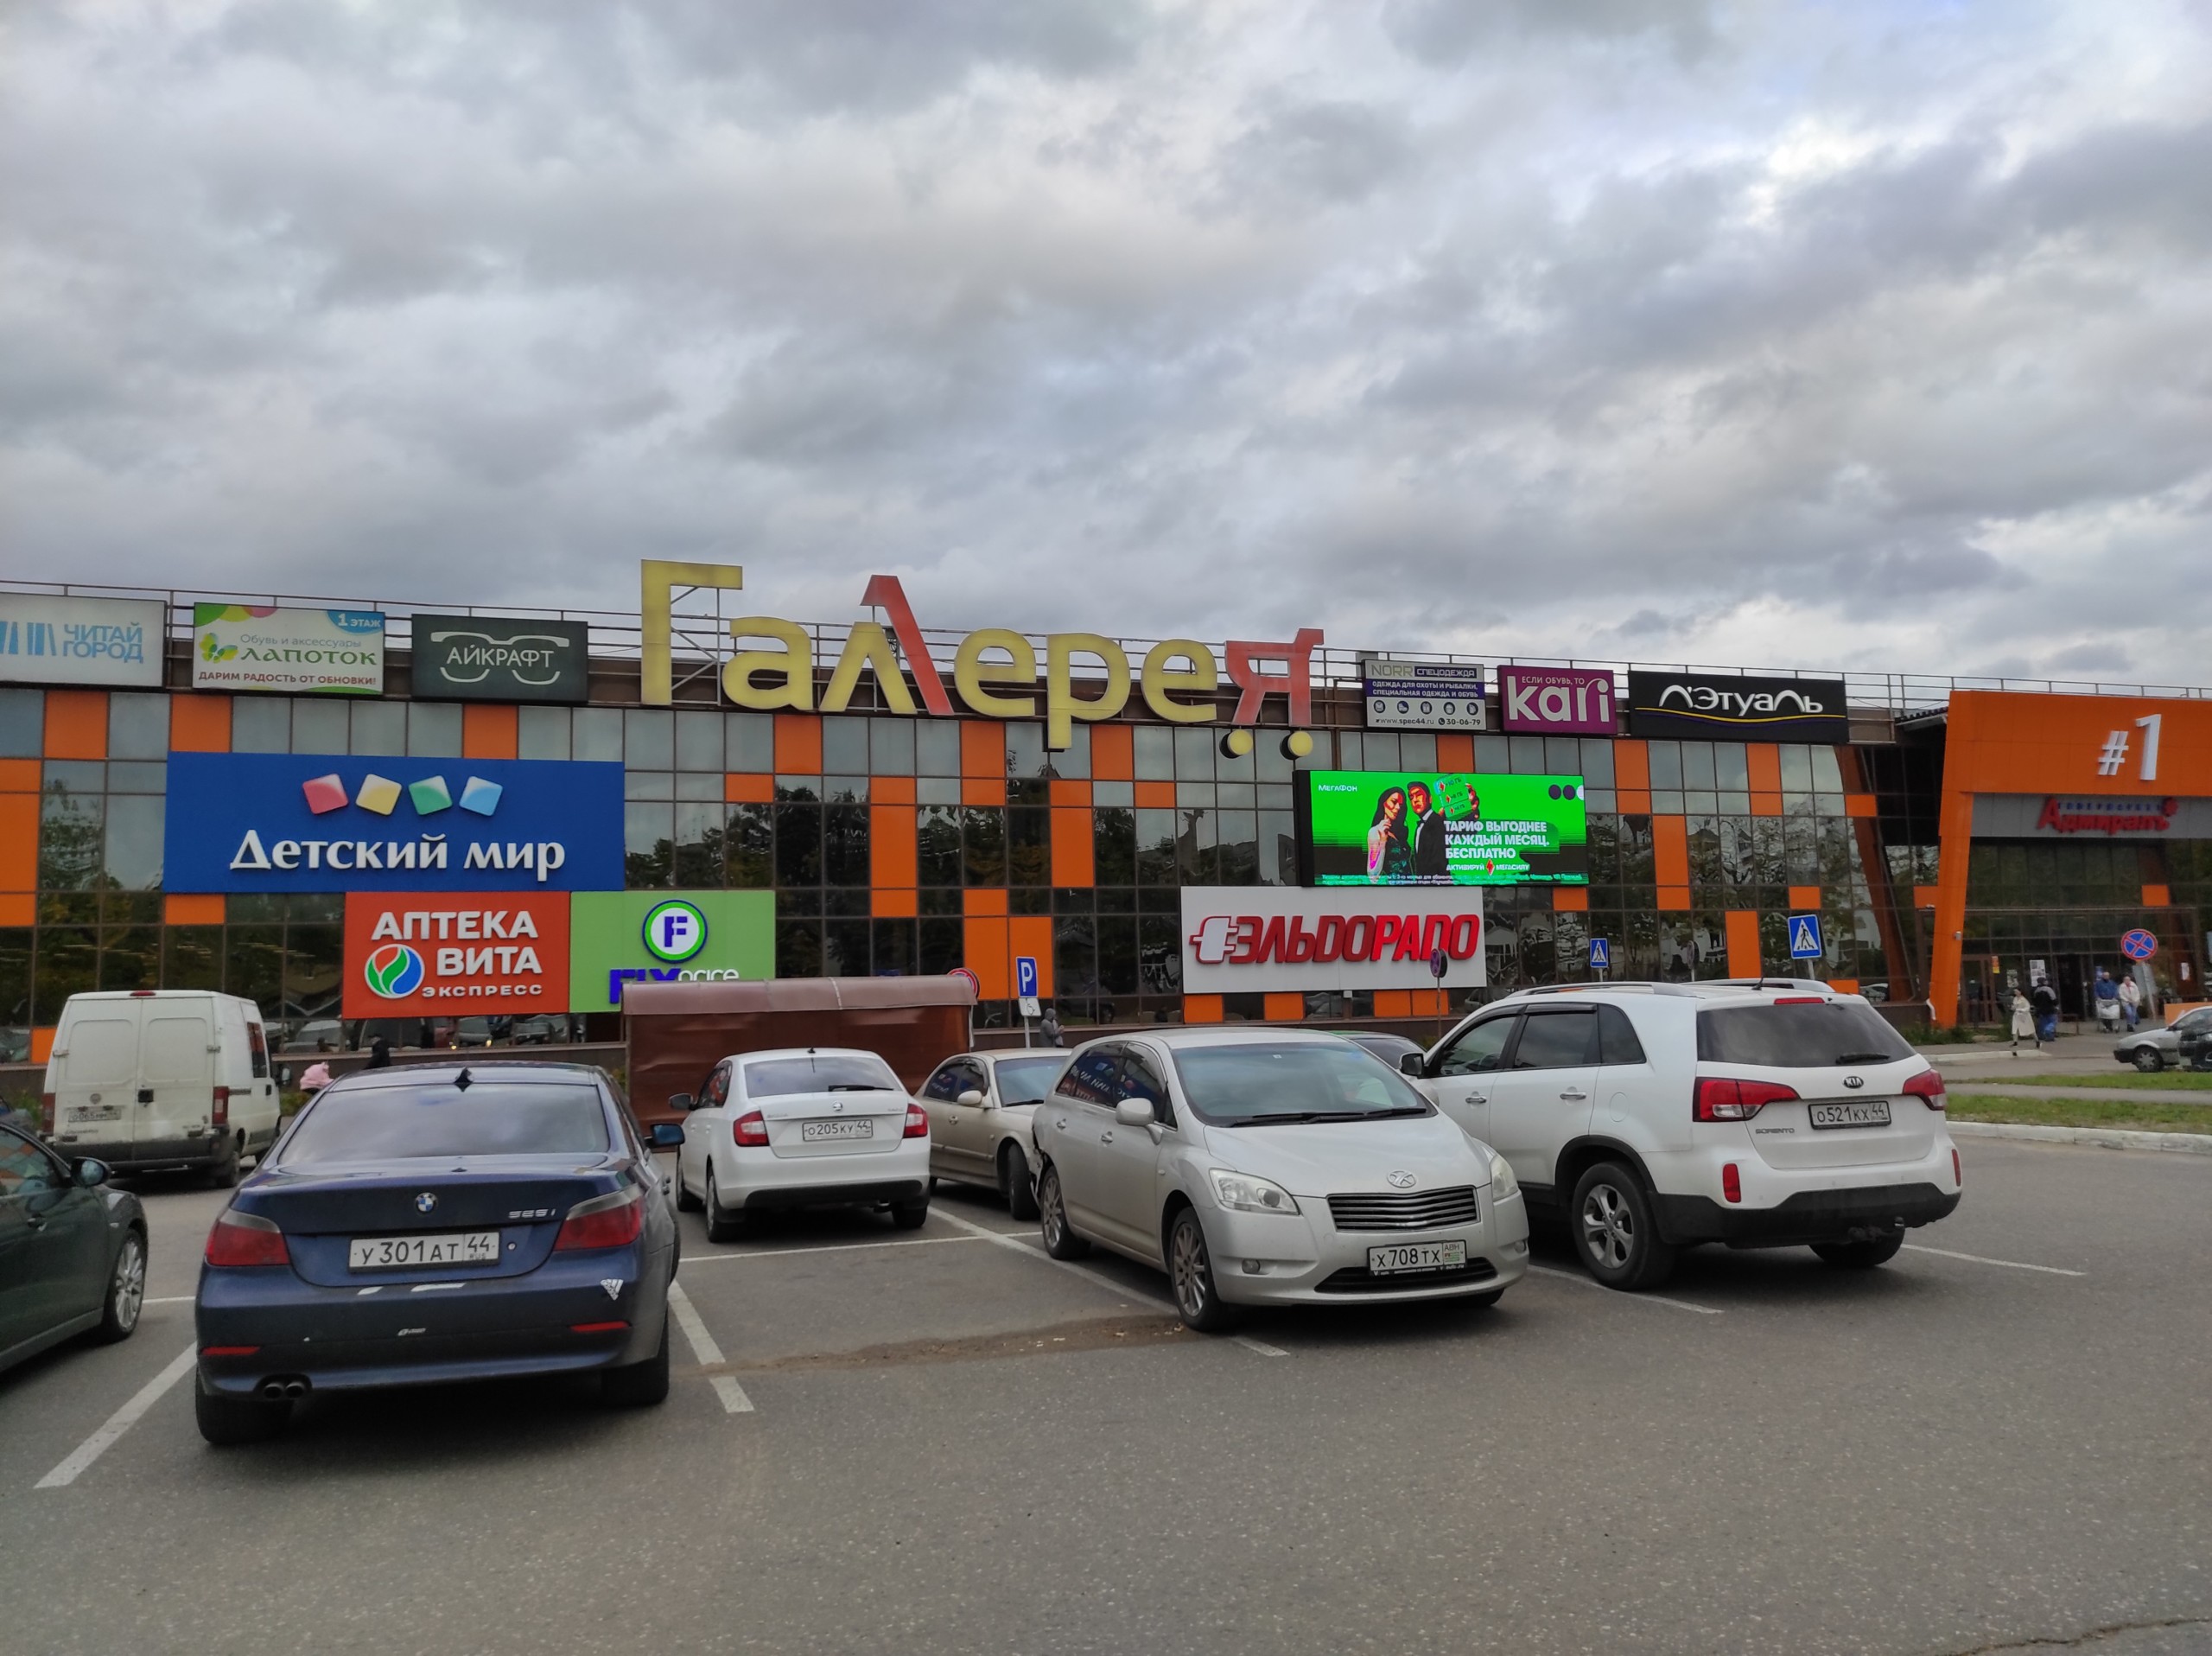 Торговый центр "Галерея" - центр притяжения для жителей Костромы. Концепция разработана компанией Канаянн